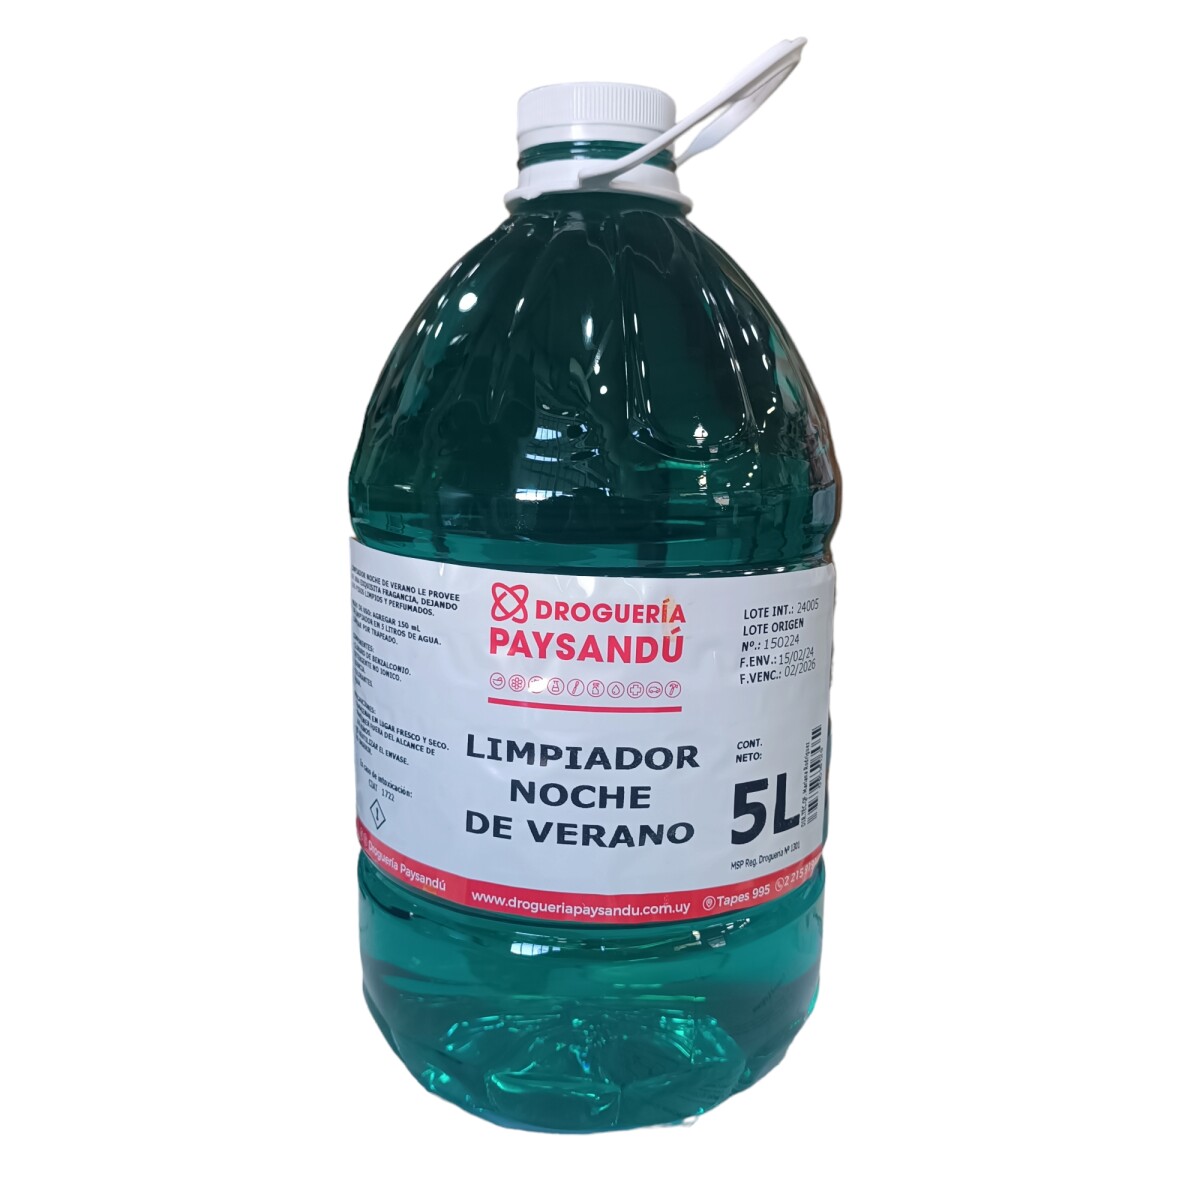 Limpiador noche de verano bactericida - desinfectante - 5 L 